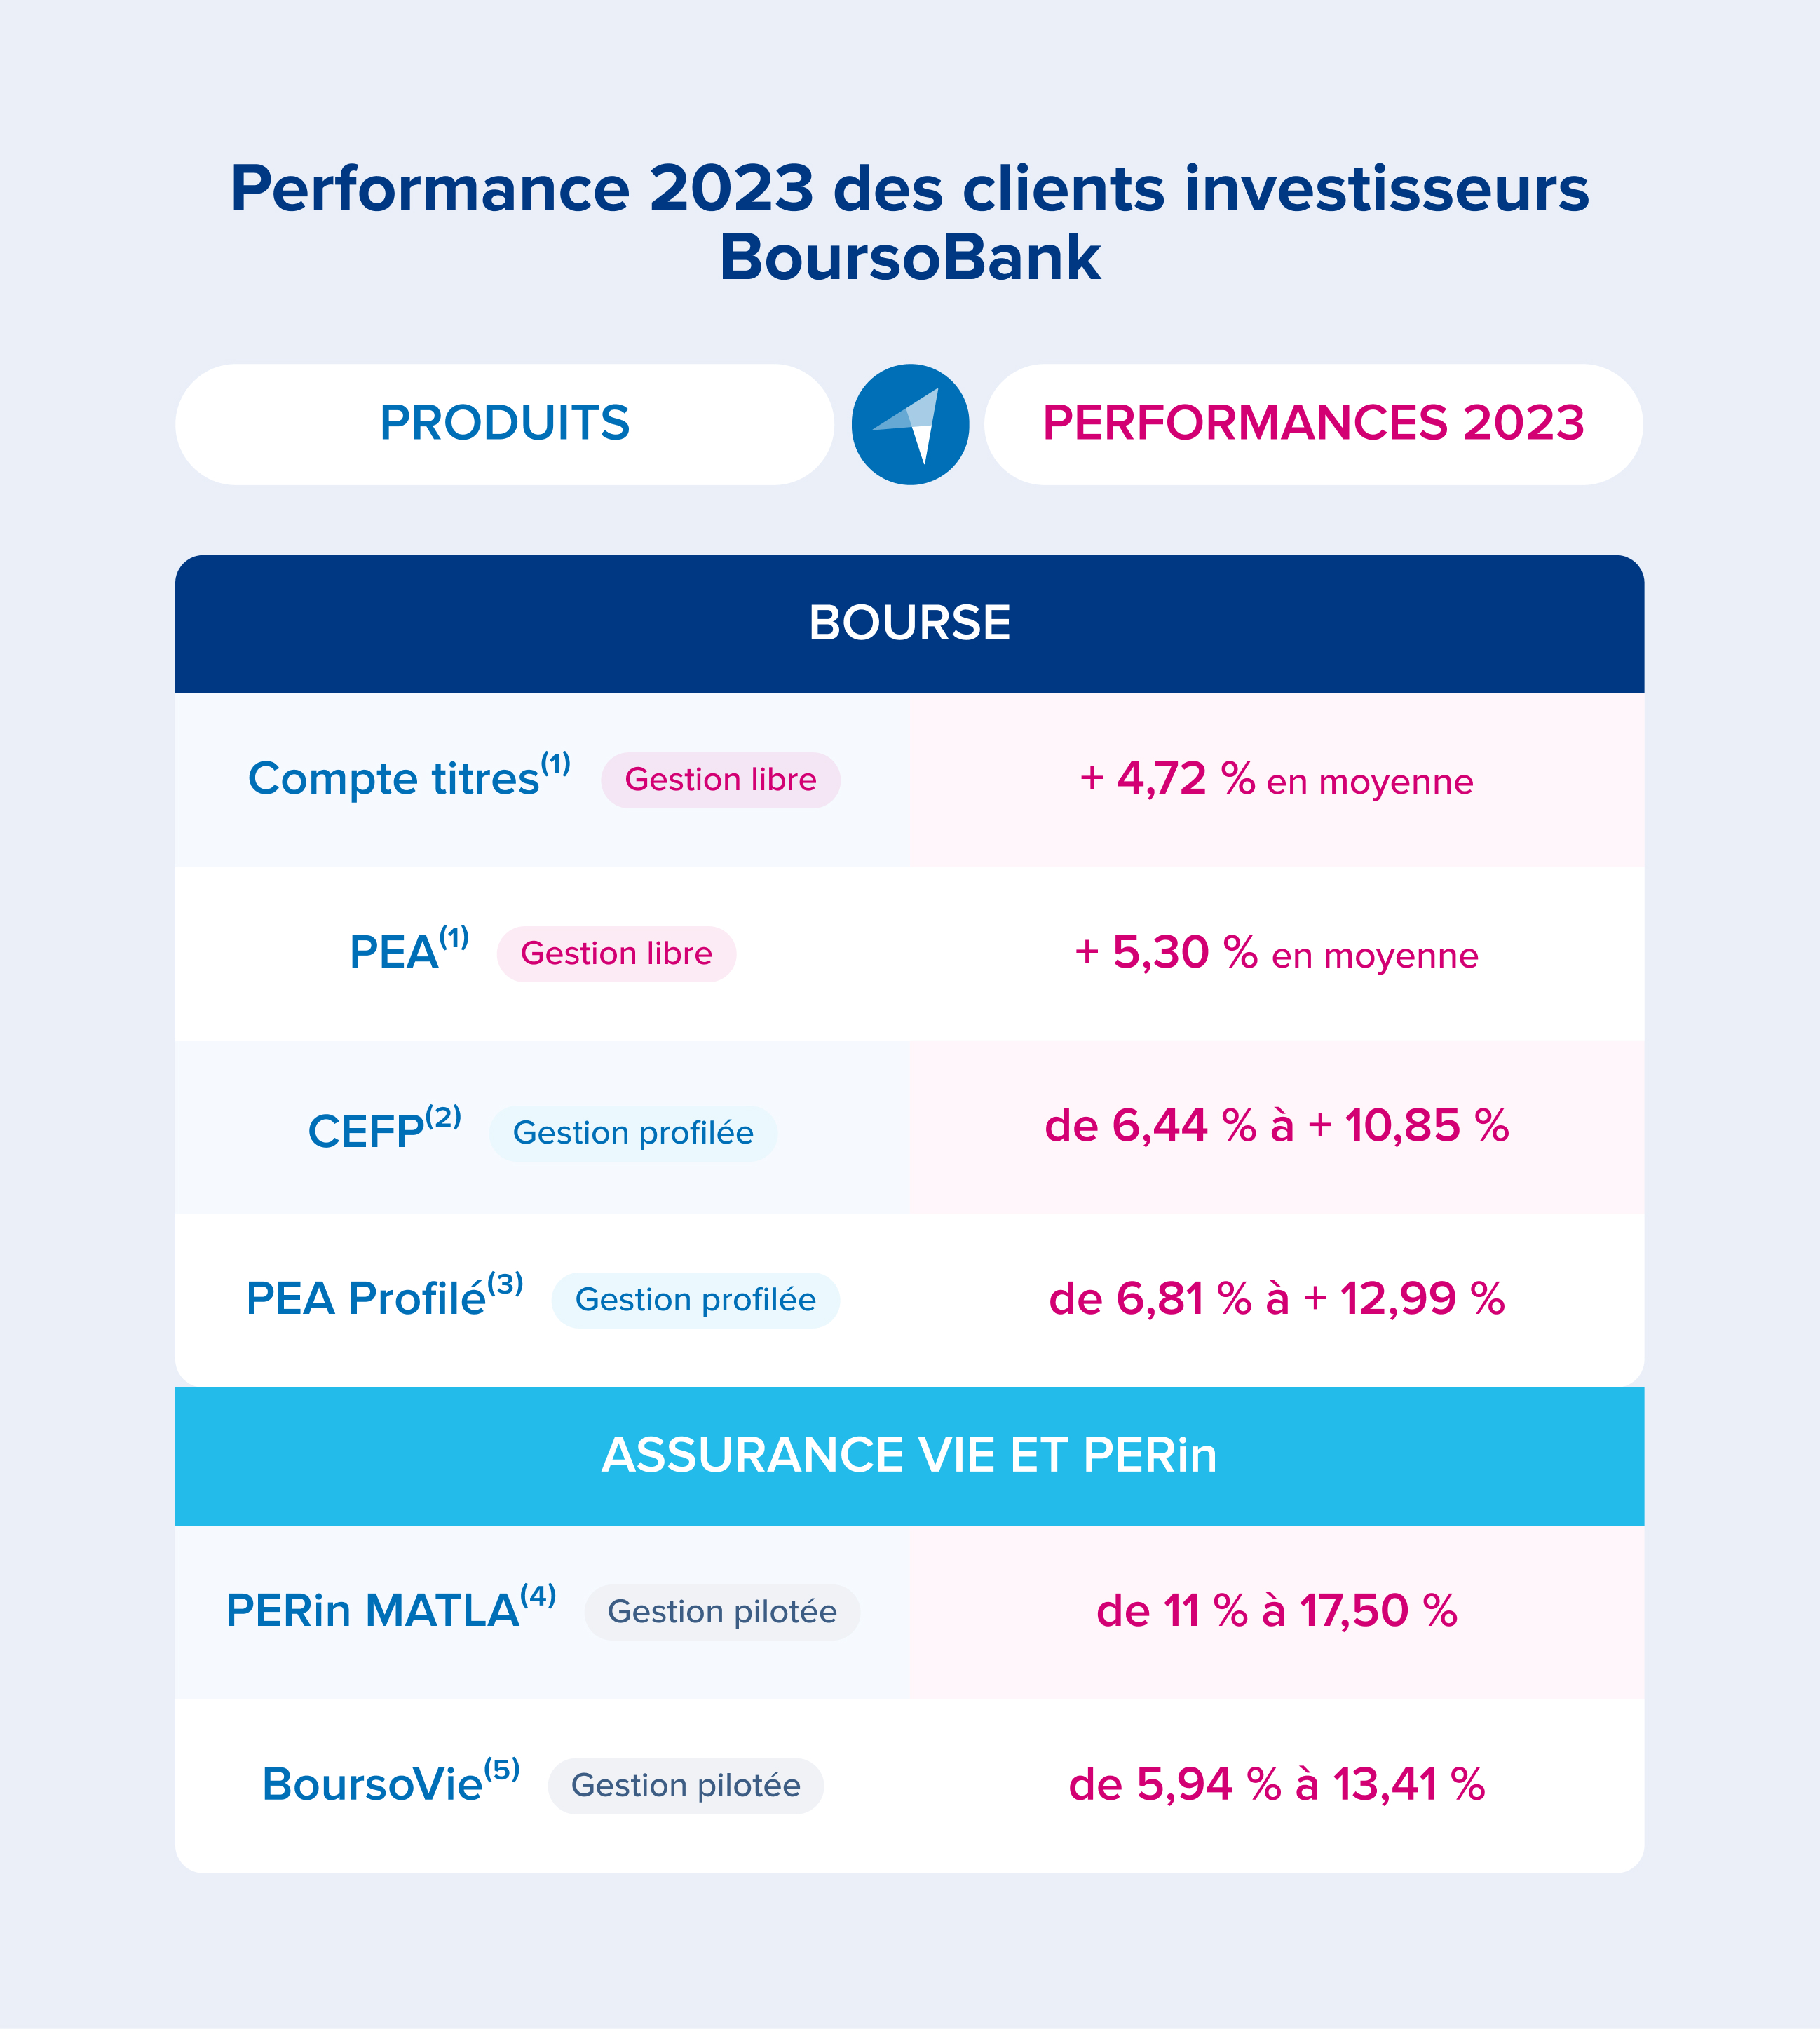 Performances 2023 des clients investisseurs BoursoBank